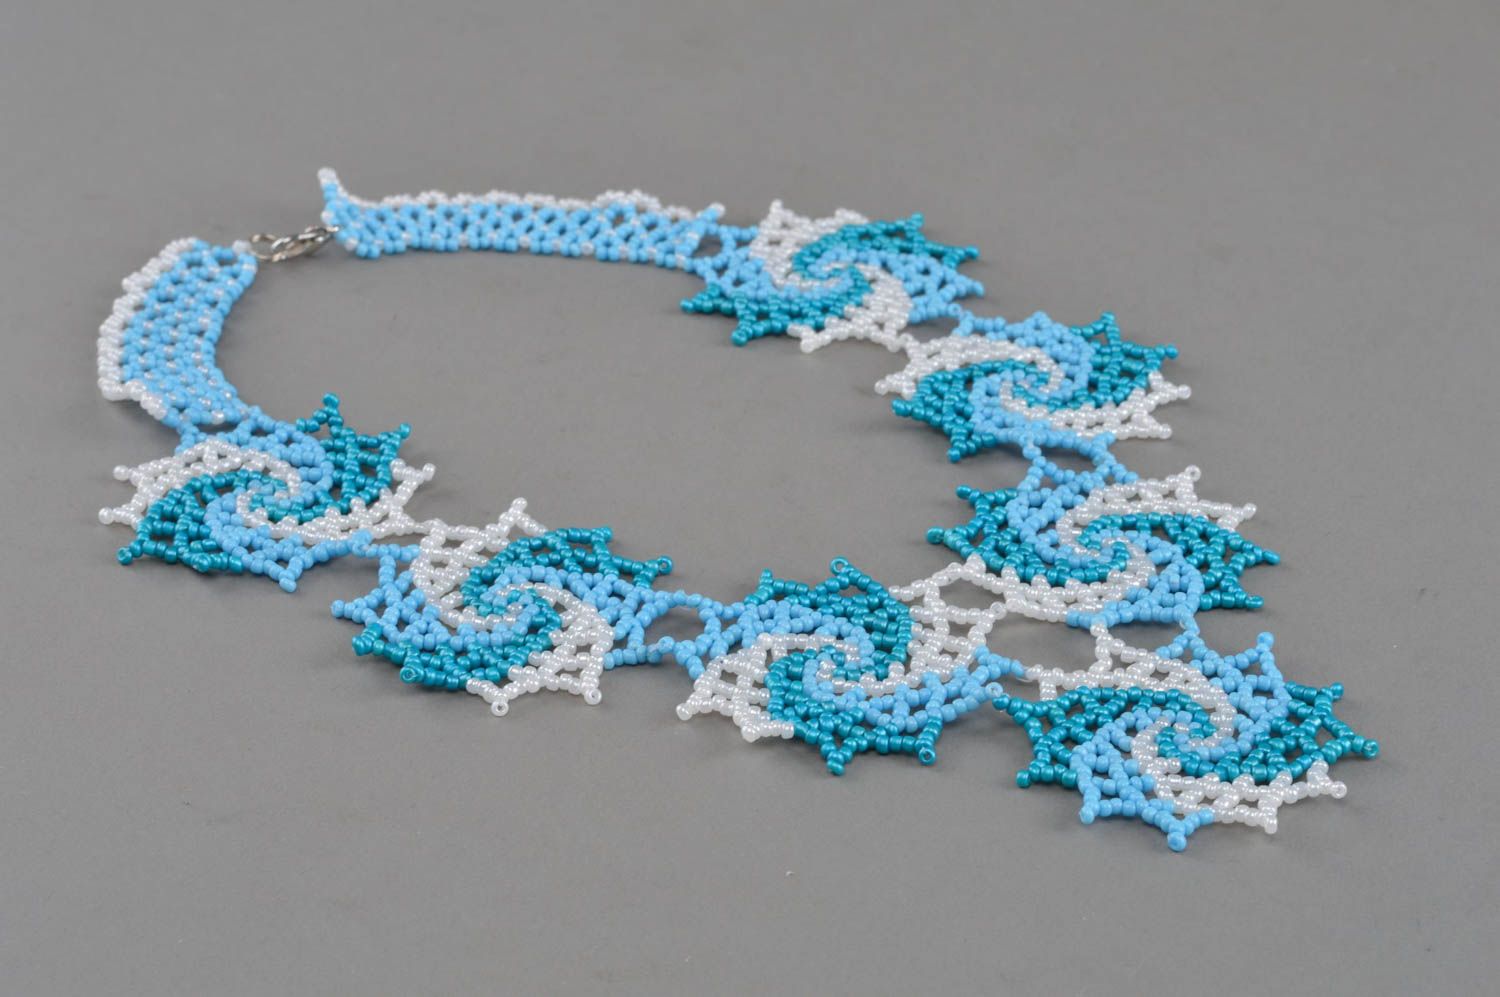 Ожерелье из бисера авторского дизайна голубое с белым красивое ажурное хэнд мейд фото 2